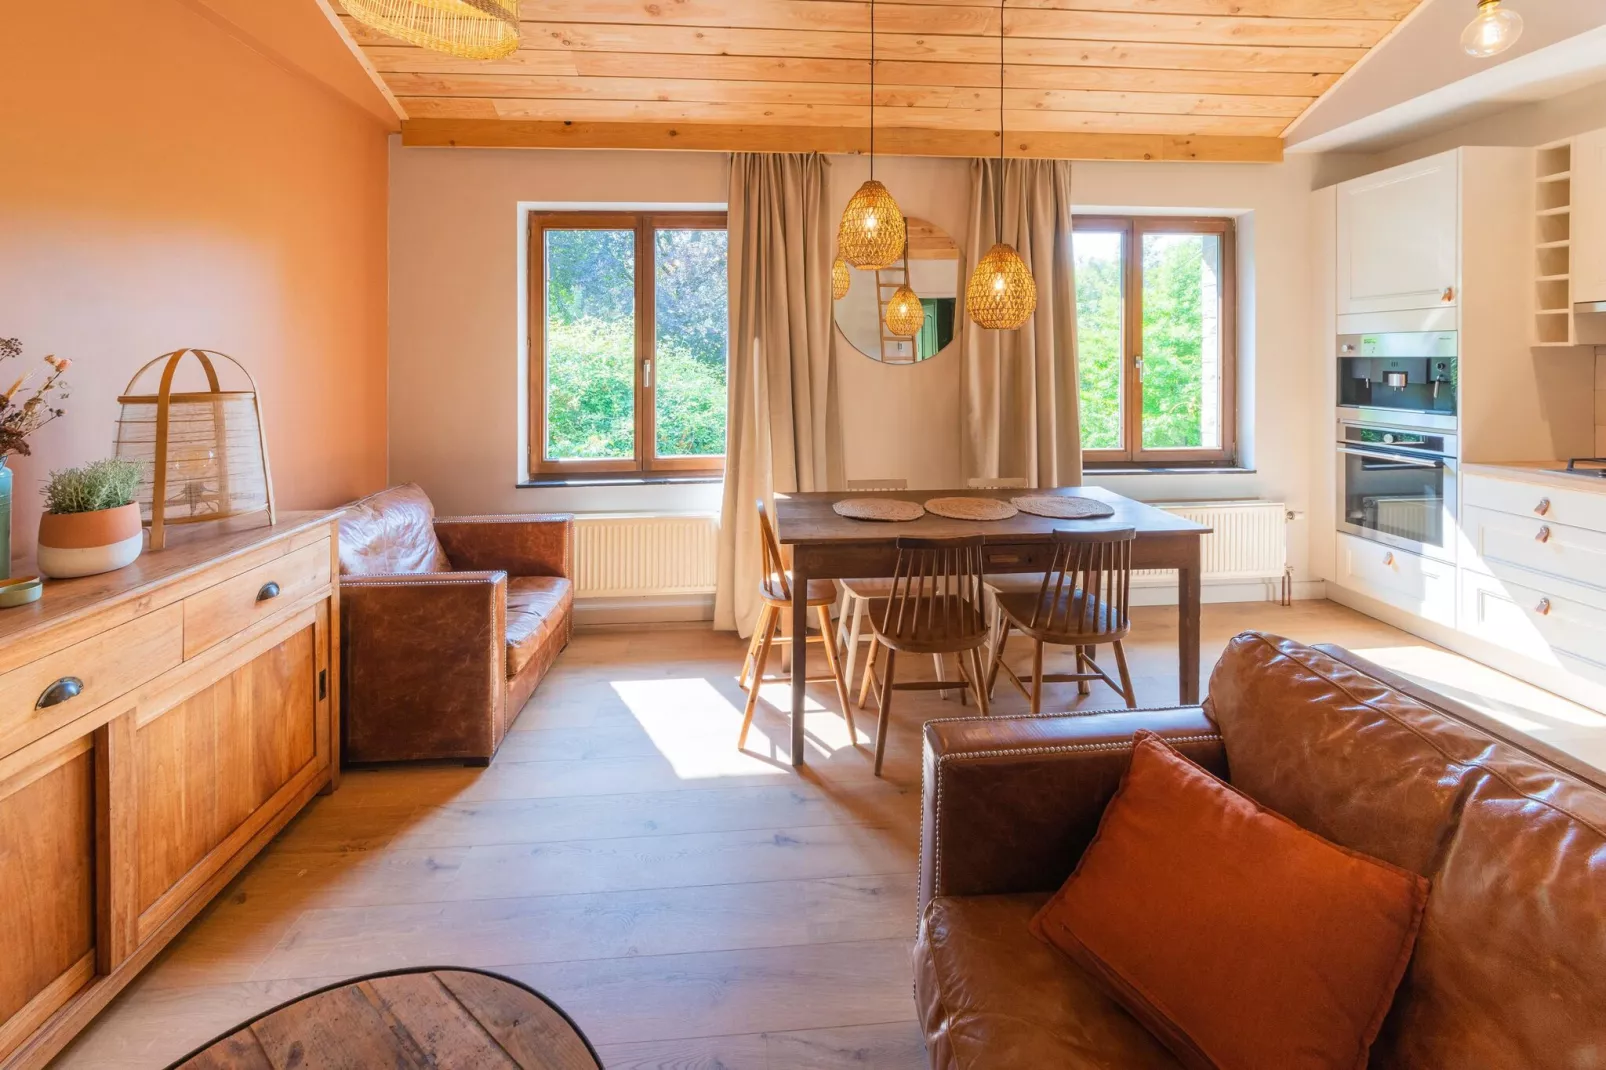 Maison de vacances cozy à Modave dans un quartier charmant-Woonkamer